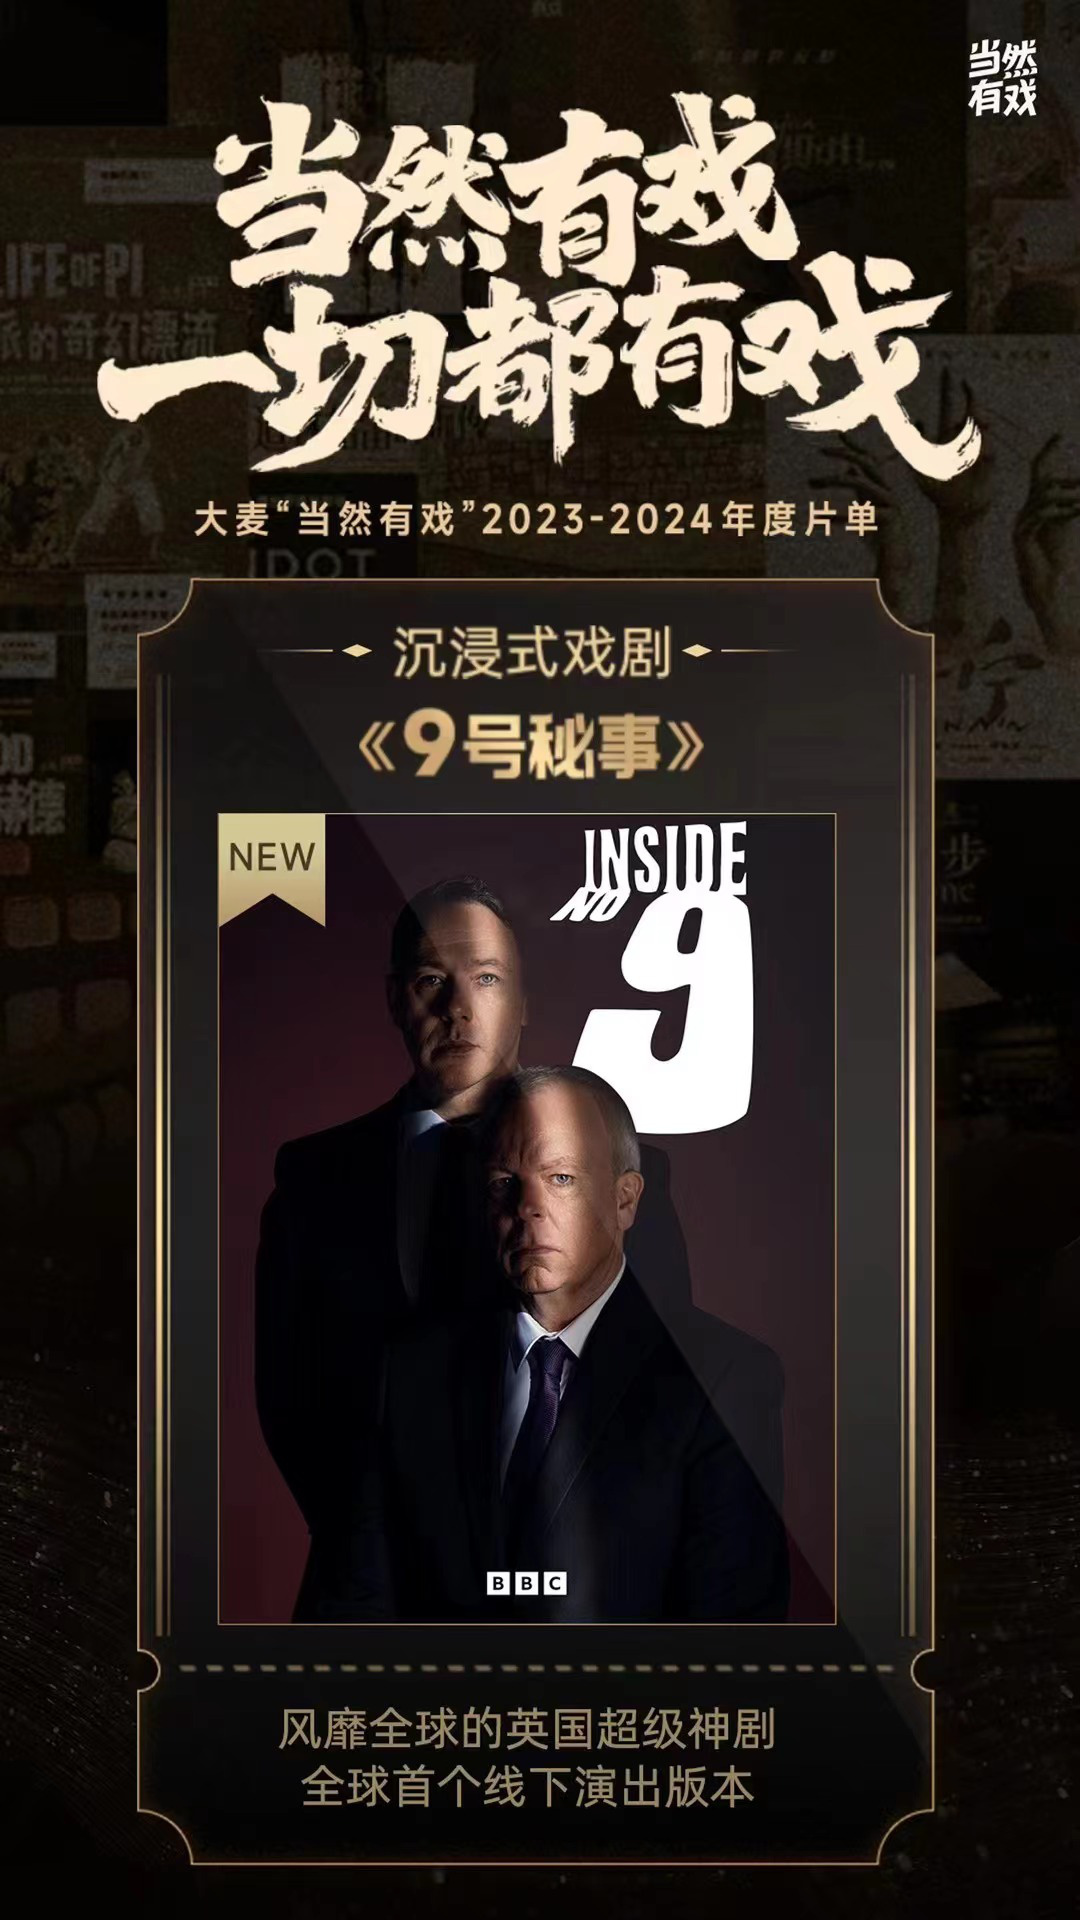 悬疑剧《9号秘事》将拍中国版 黄晓明担任出品人